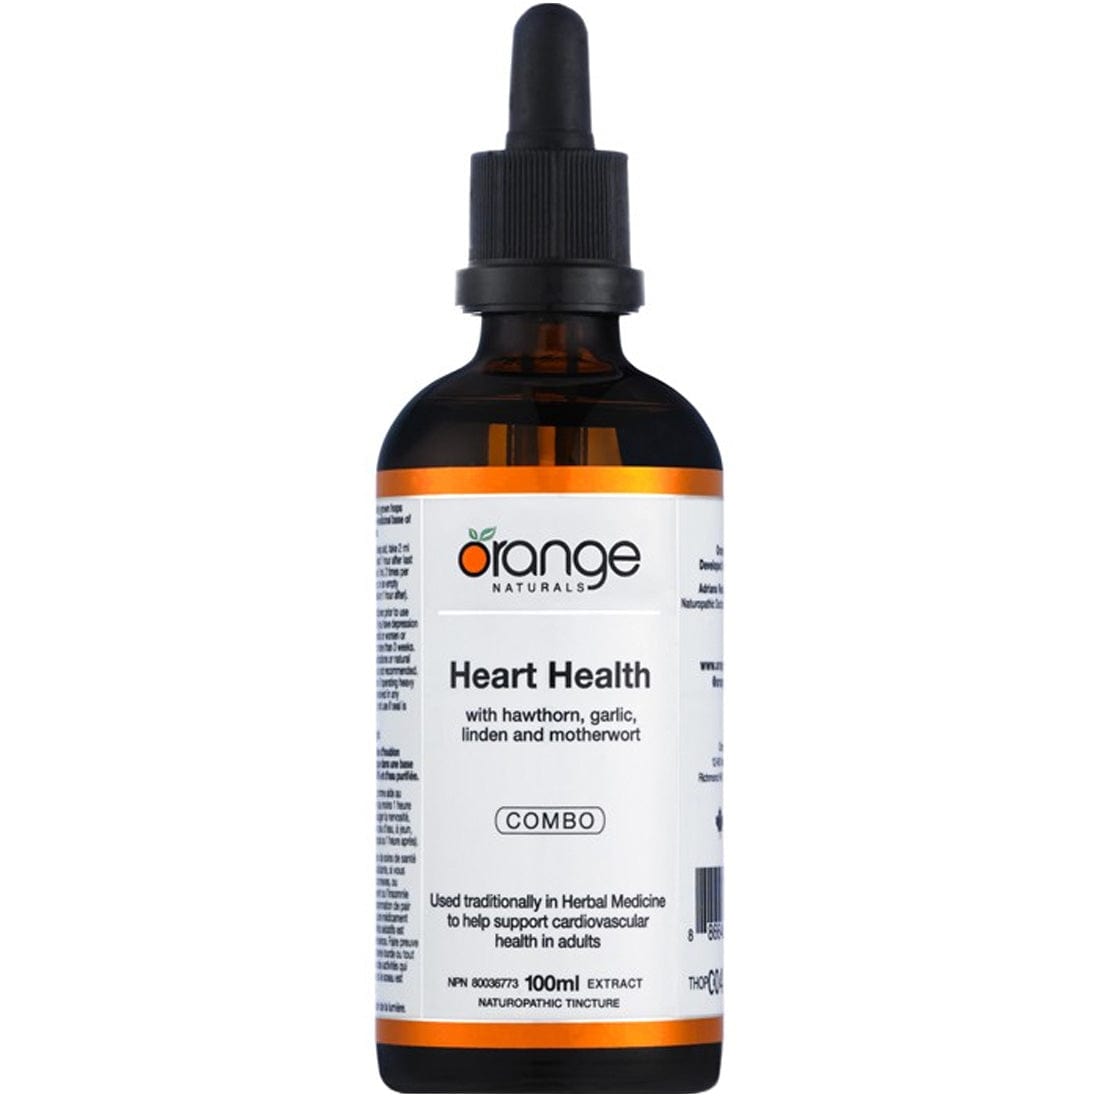 Orange Naturals Heart Health, 100ml Tincture